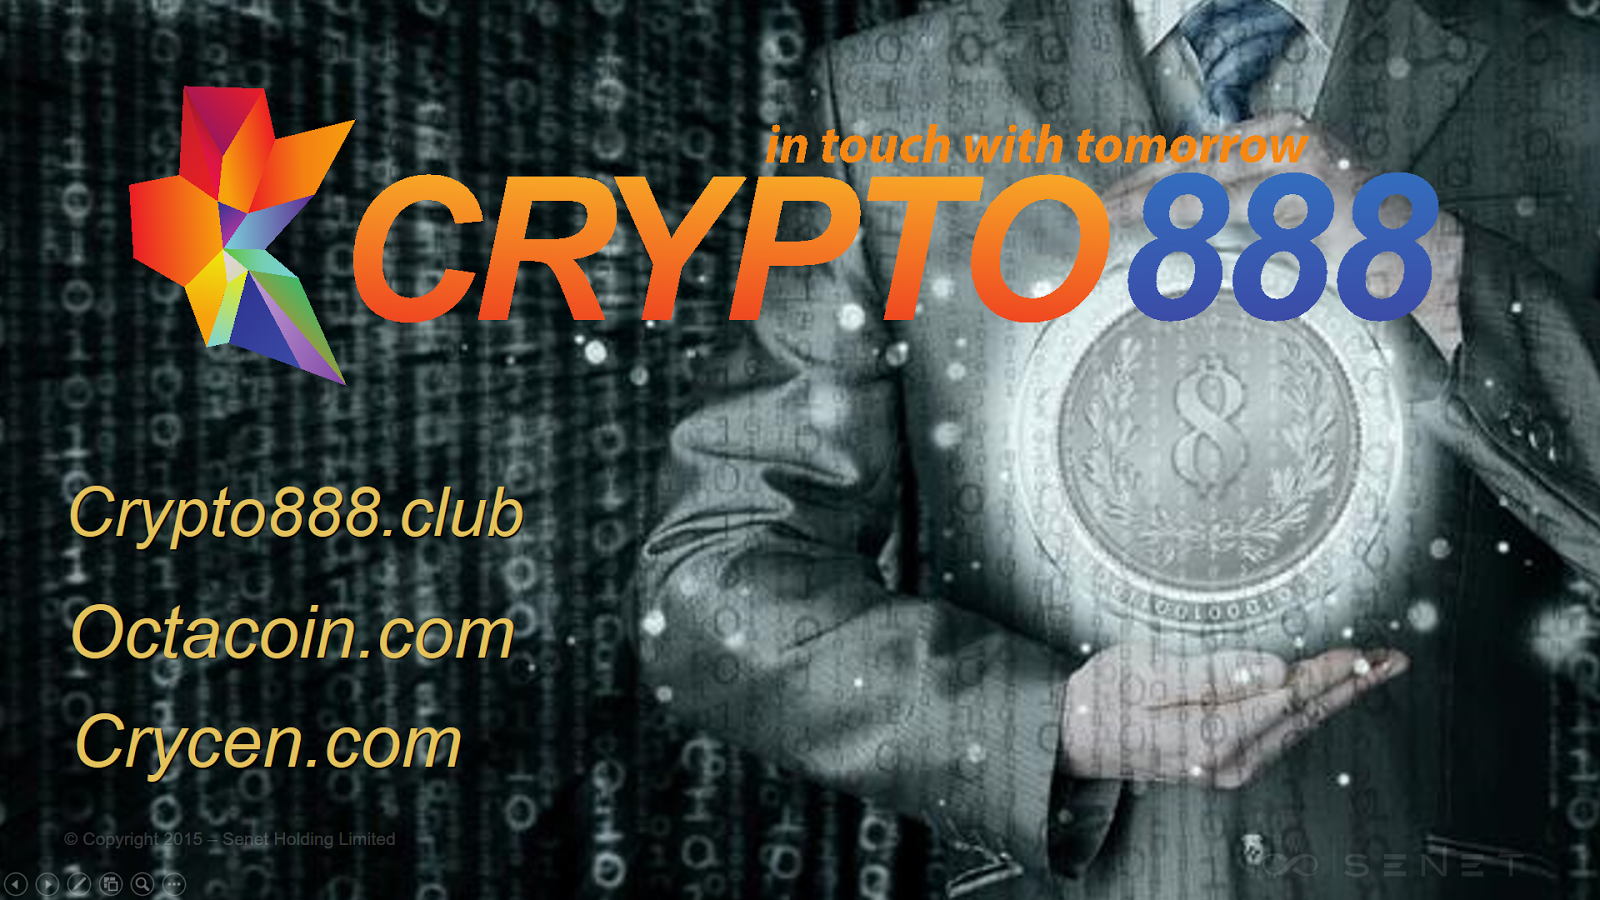 C�c gói lợi nhuận & đầu tư của Crypto888 - Octa Coin Việt Nam